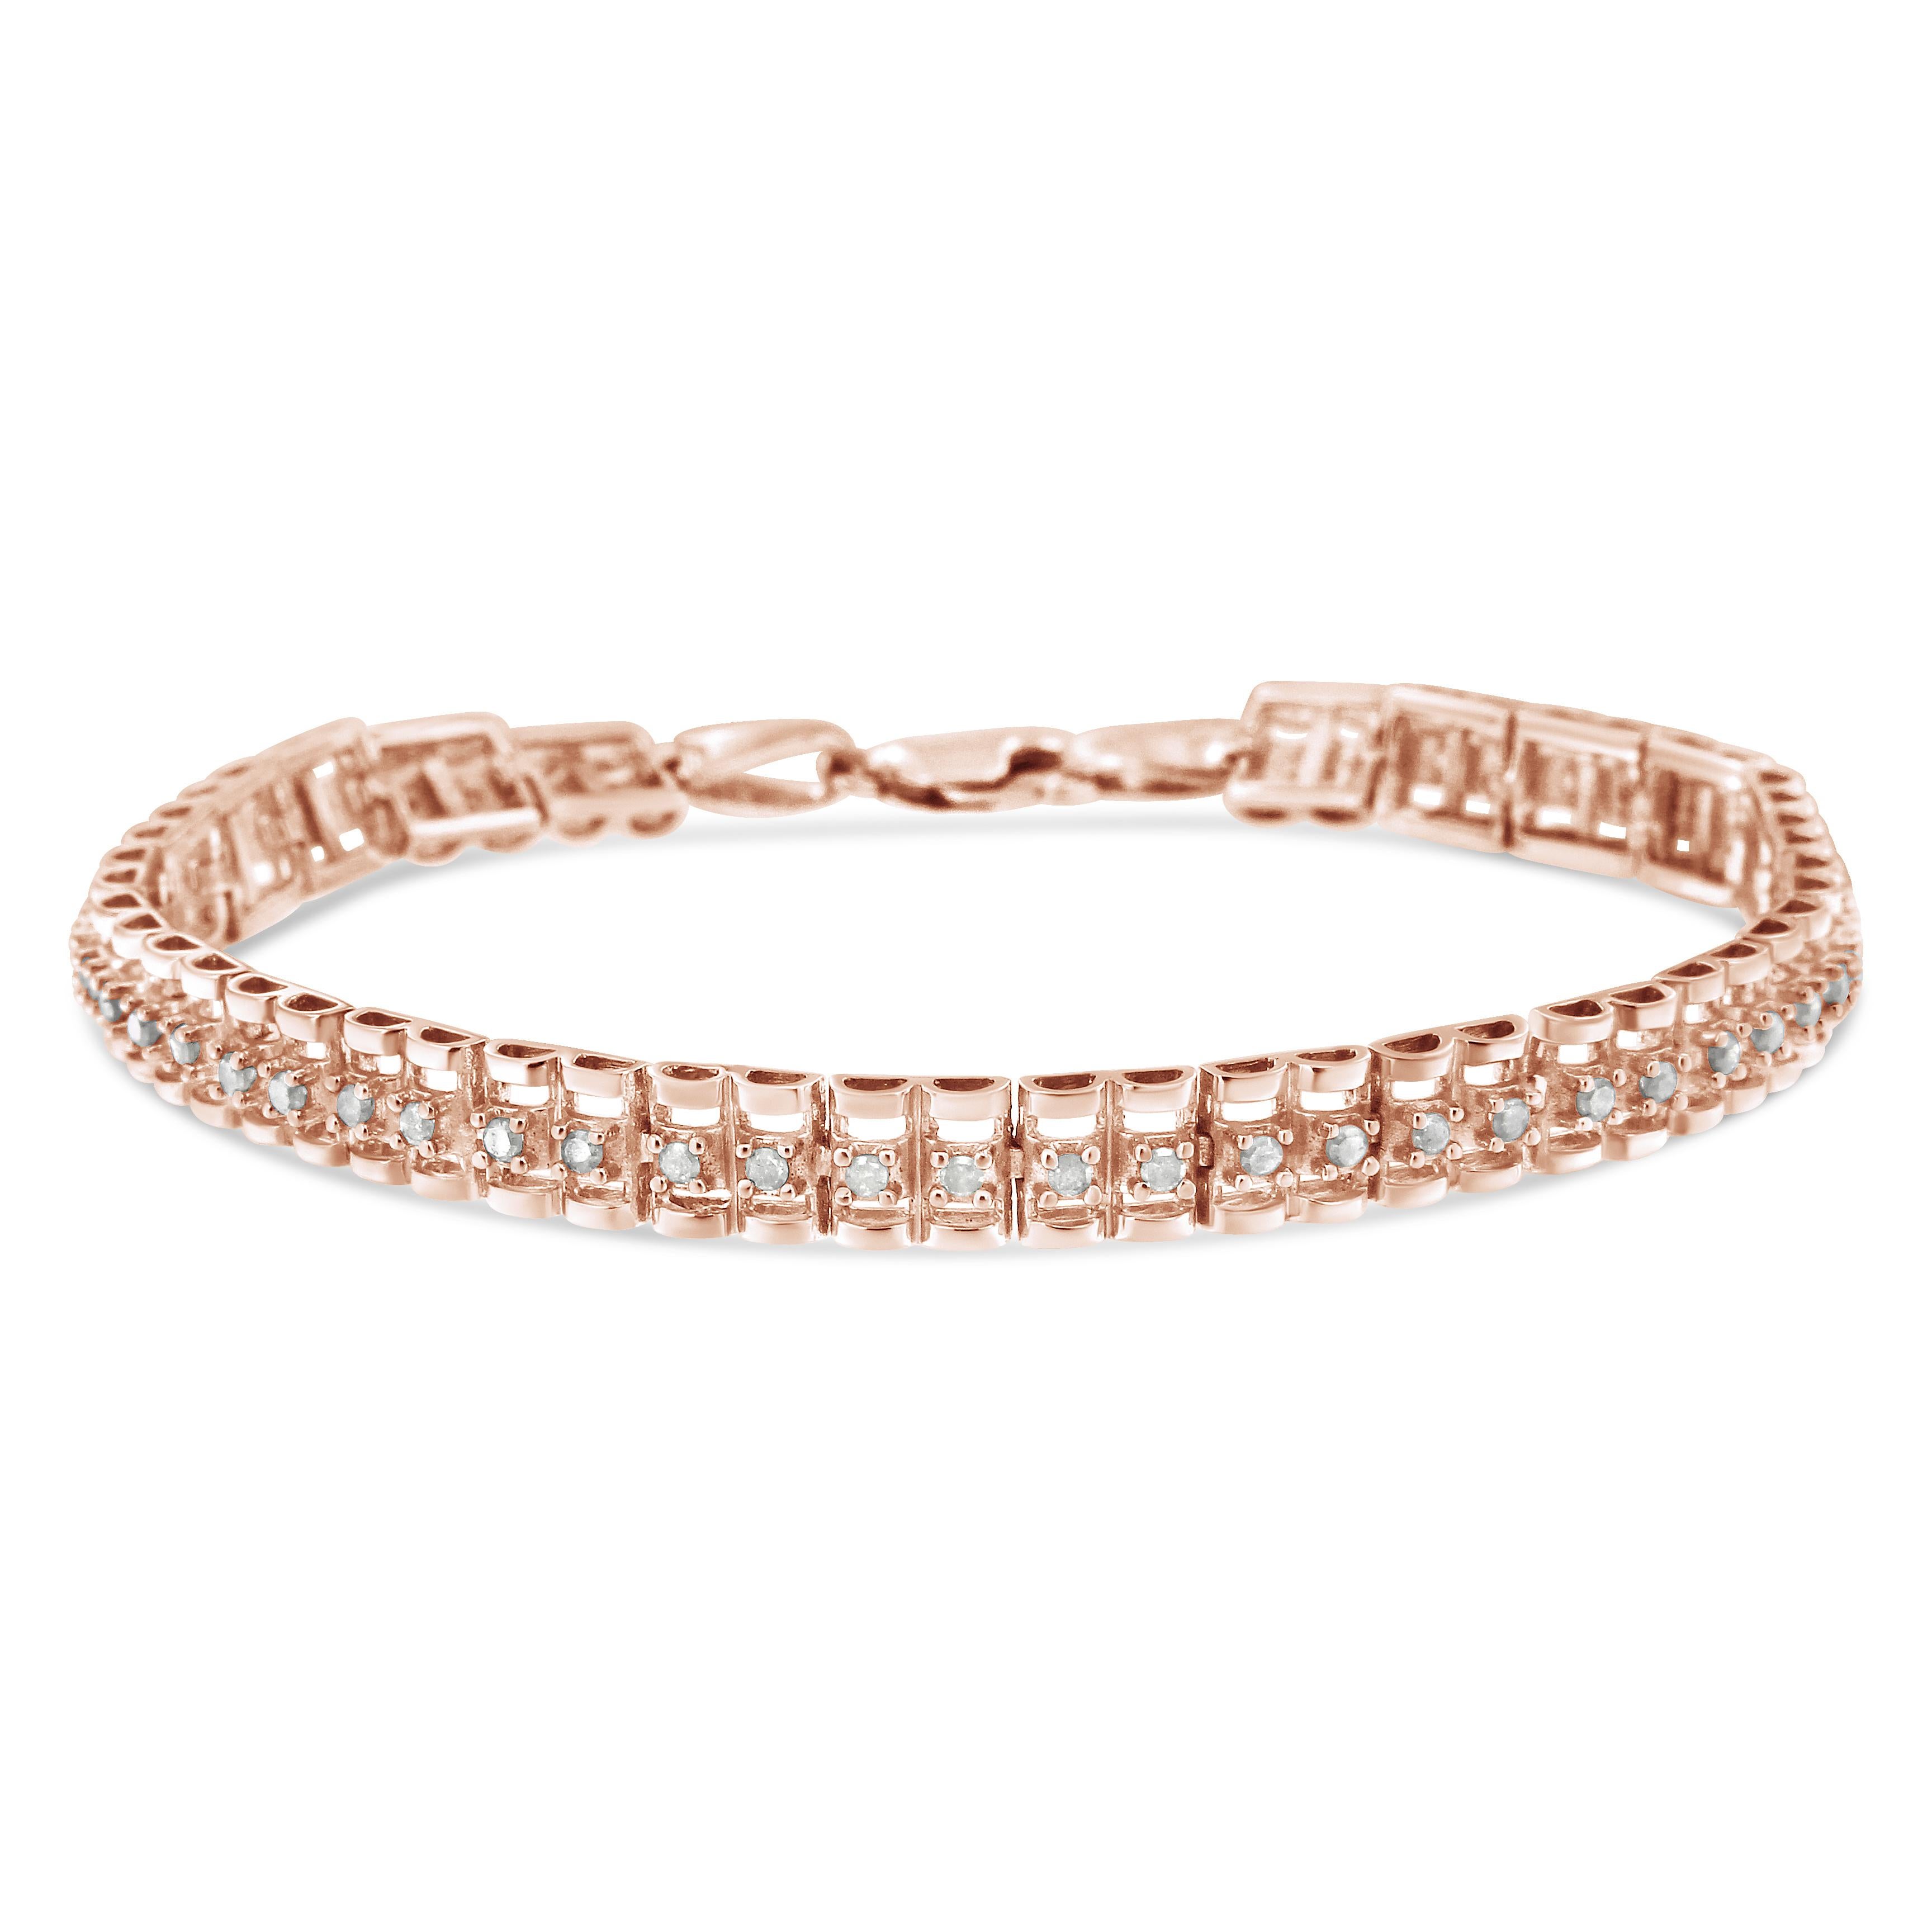 Ce magnifique bracelet tennis en argent sterling .925 présente un poids total de 2,0 carats avec 48 diamants ronds de taille rose. Le bracelet tennis comporte des maillons articulés avec deux formes entourant deux diamants de chaque côté. Les